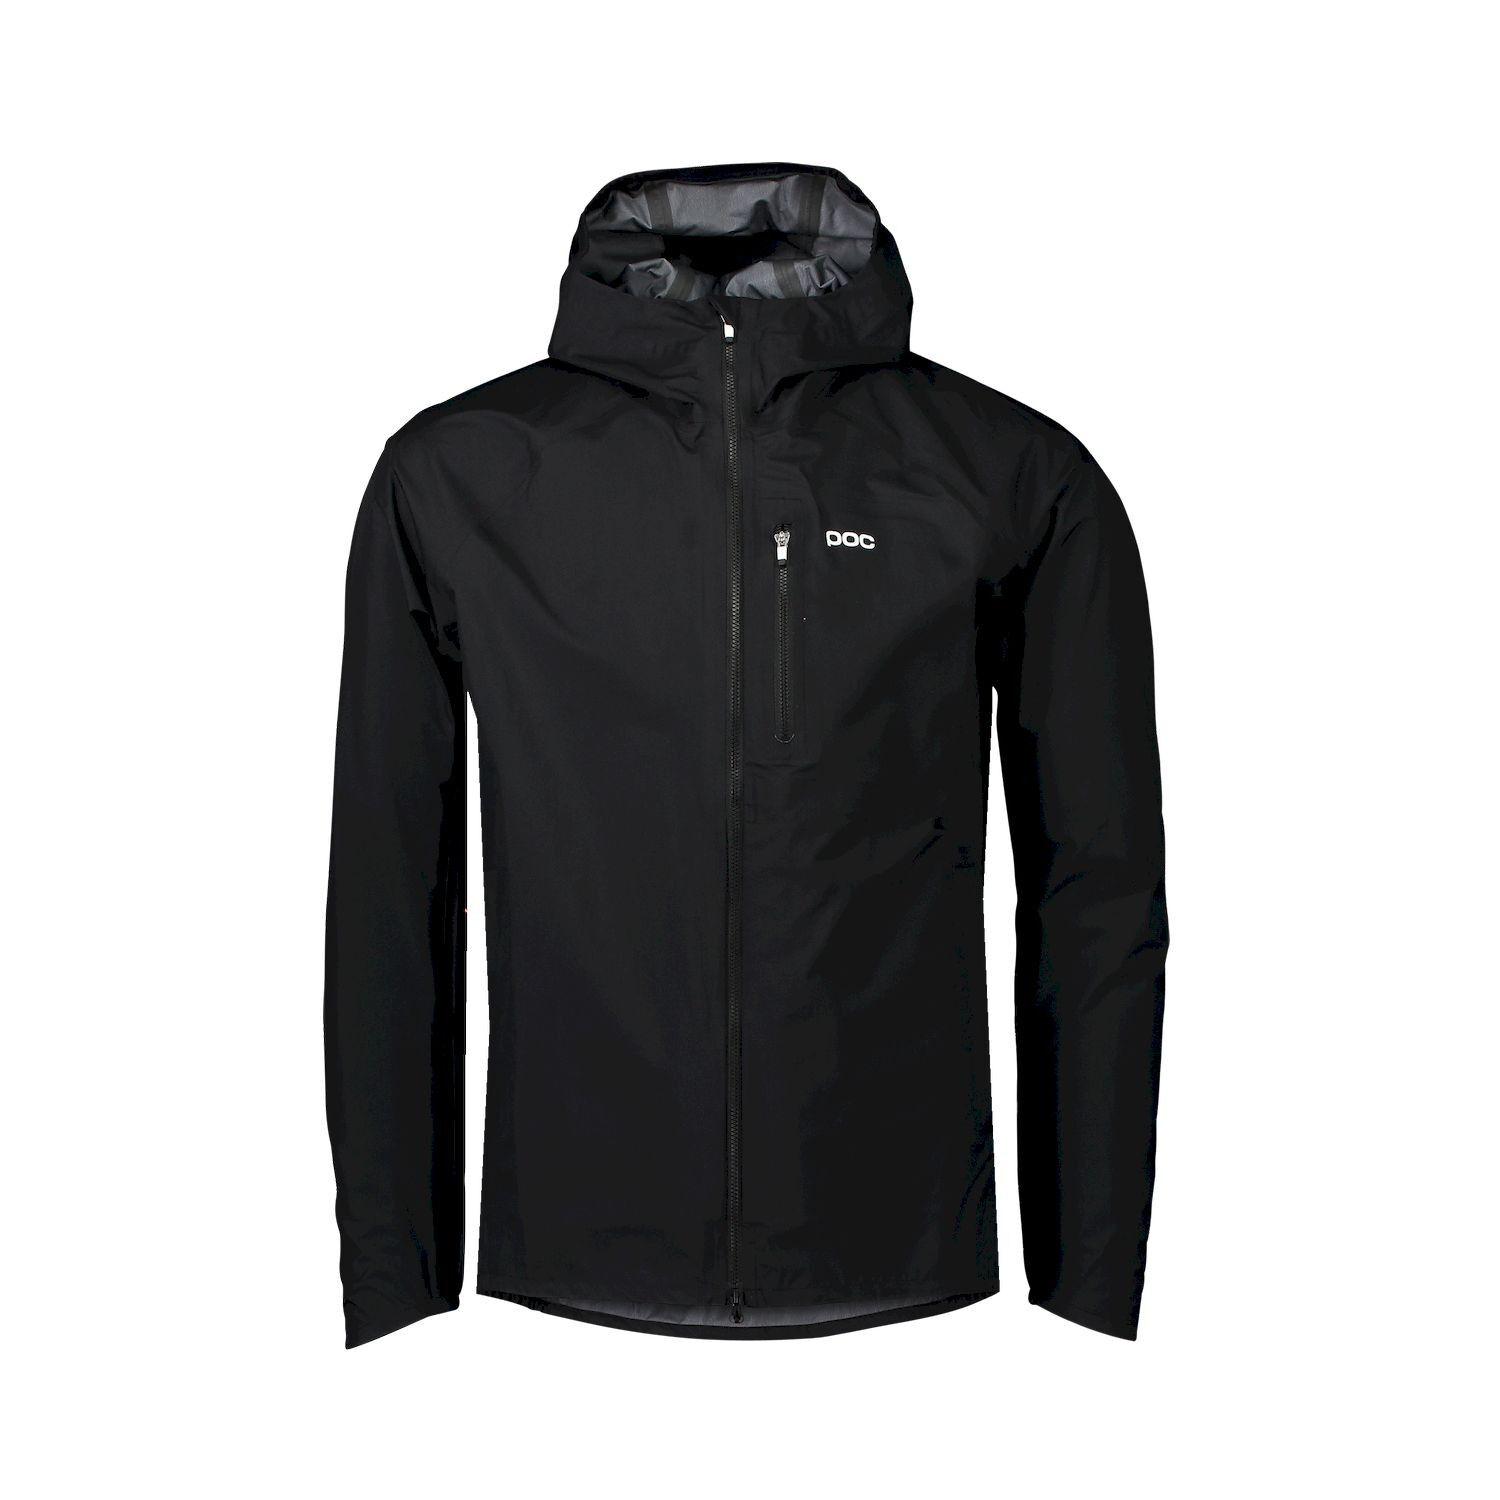 Poc Motion Rain Jacket - Waterproof jacket - Men's